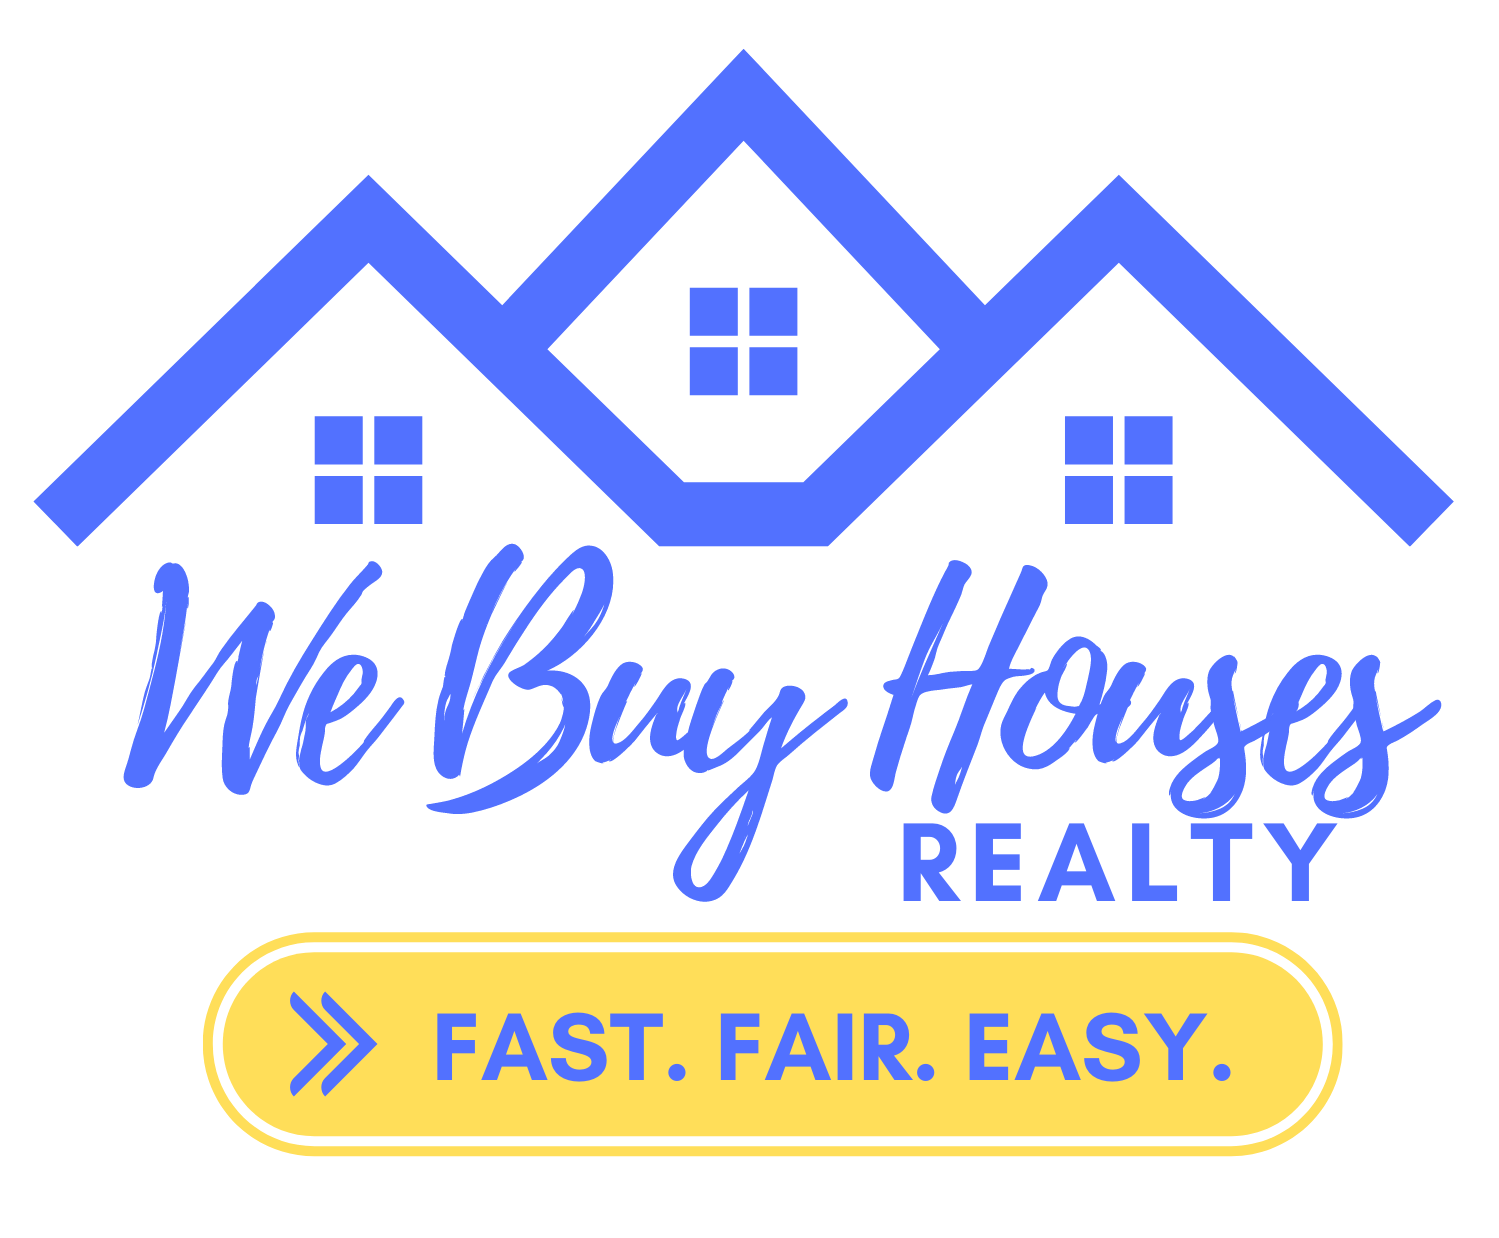 We Buy Houses Realty LLC